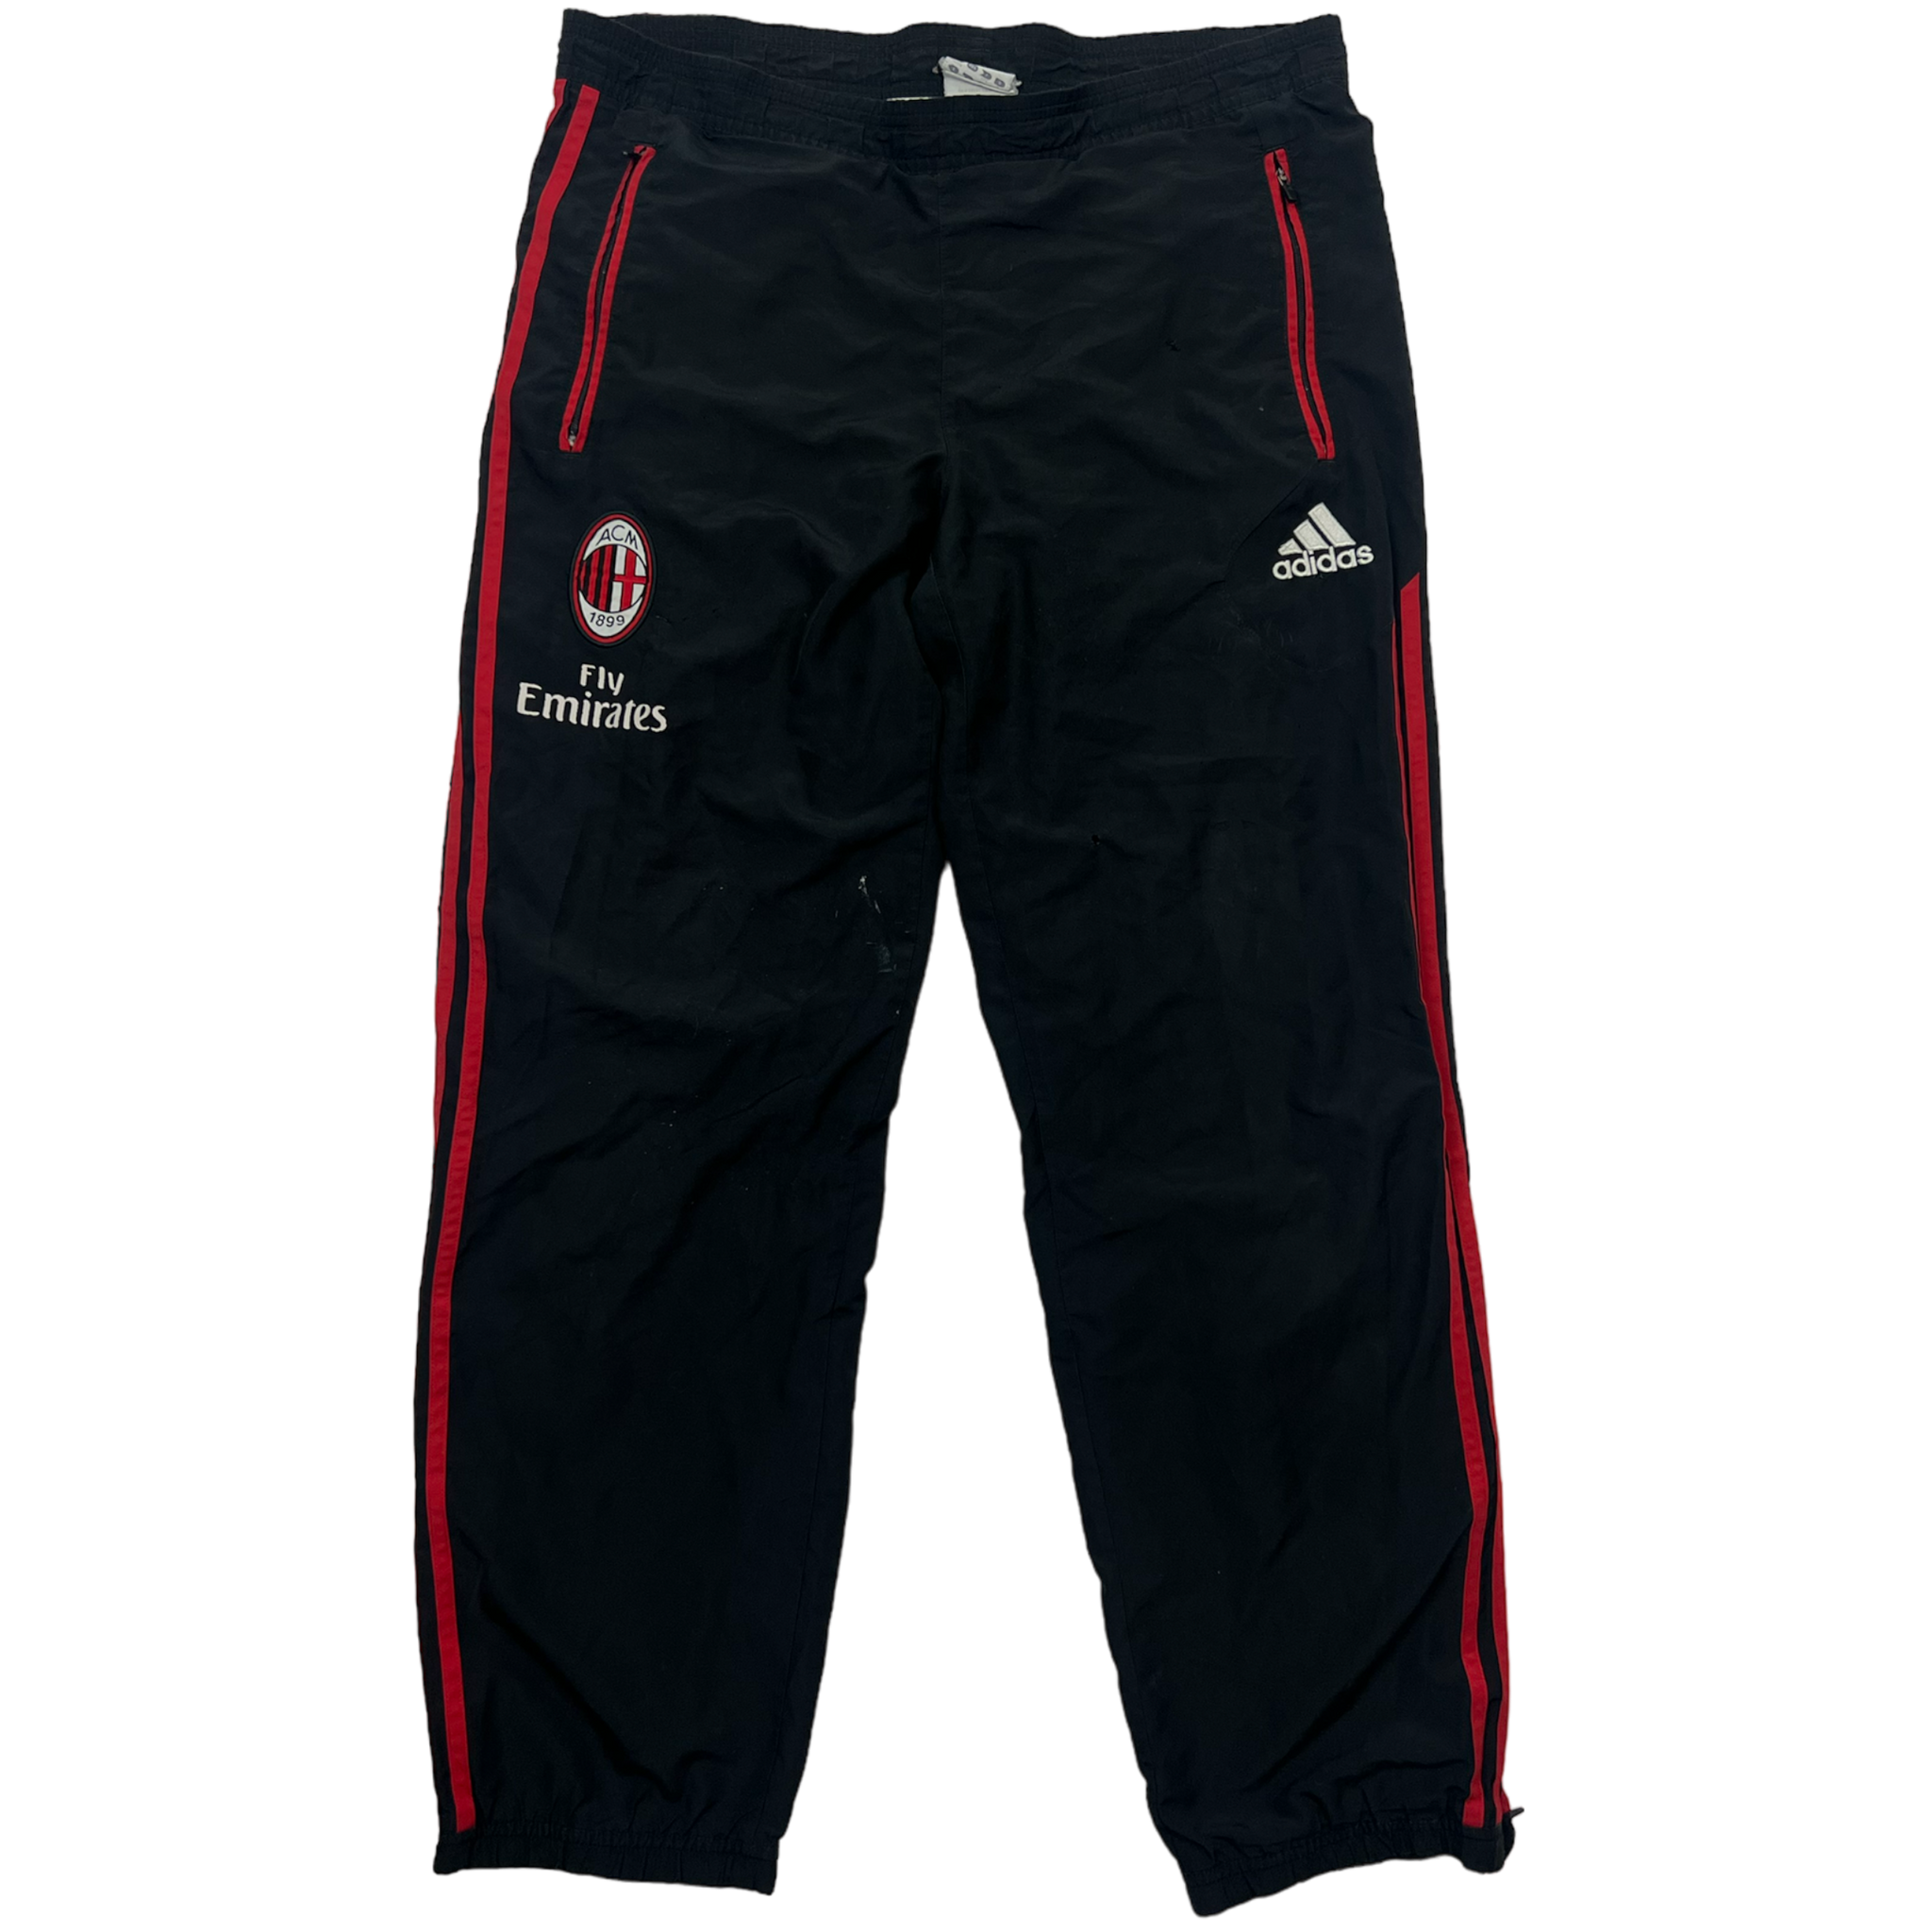 Adidas AC Milan Tracksuit (M)